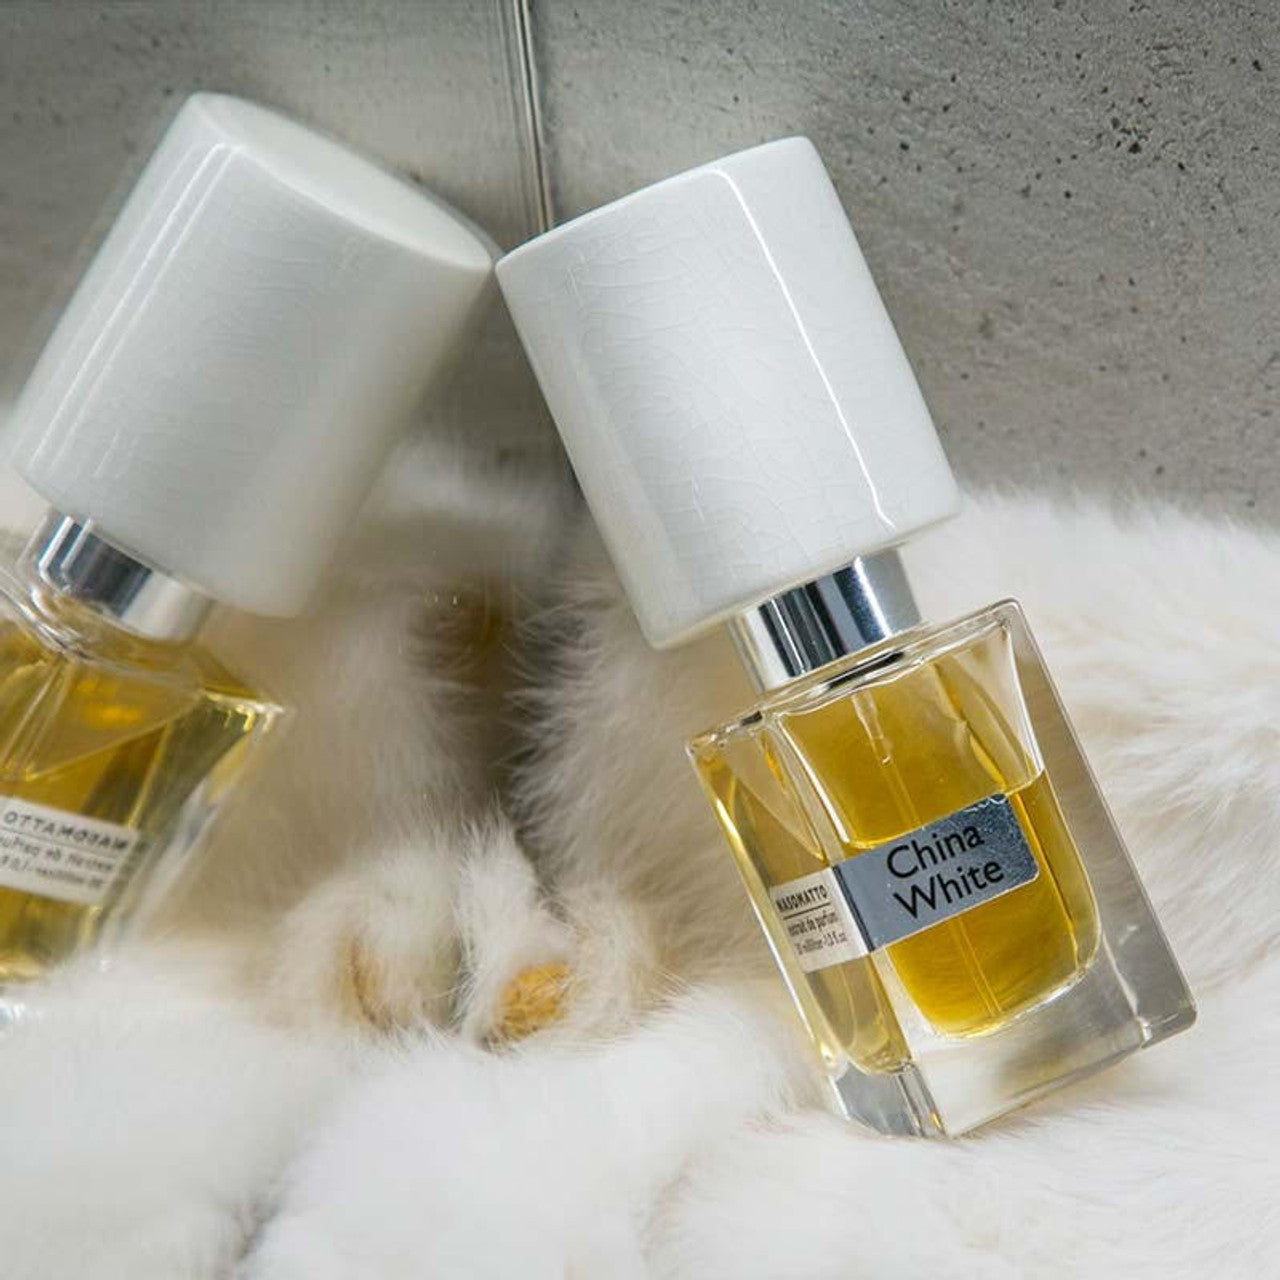 NASOMATTO CHINA WHITE Extrait De Parfum 30 ML